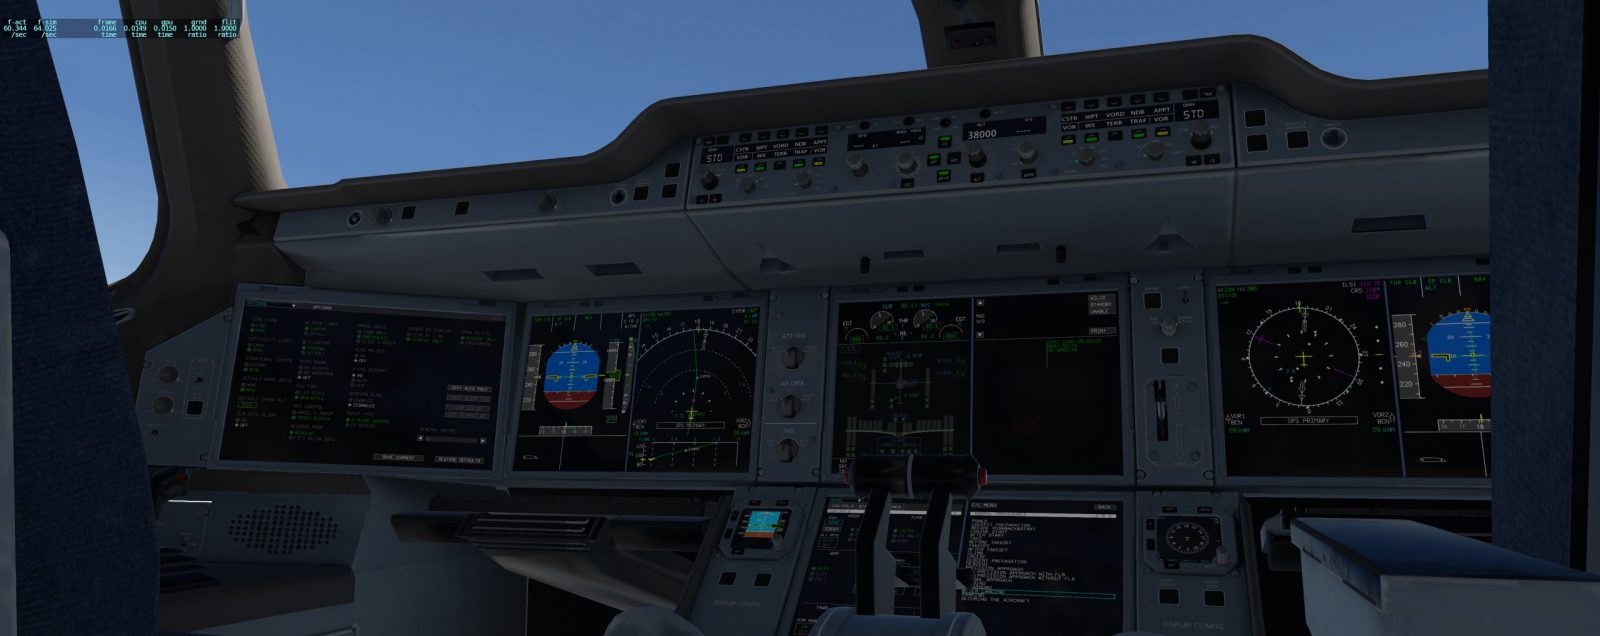 A350驾驶舱-9018 